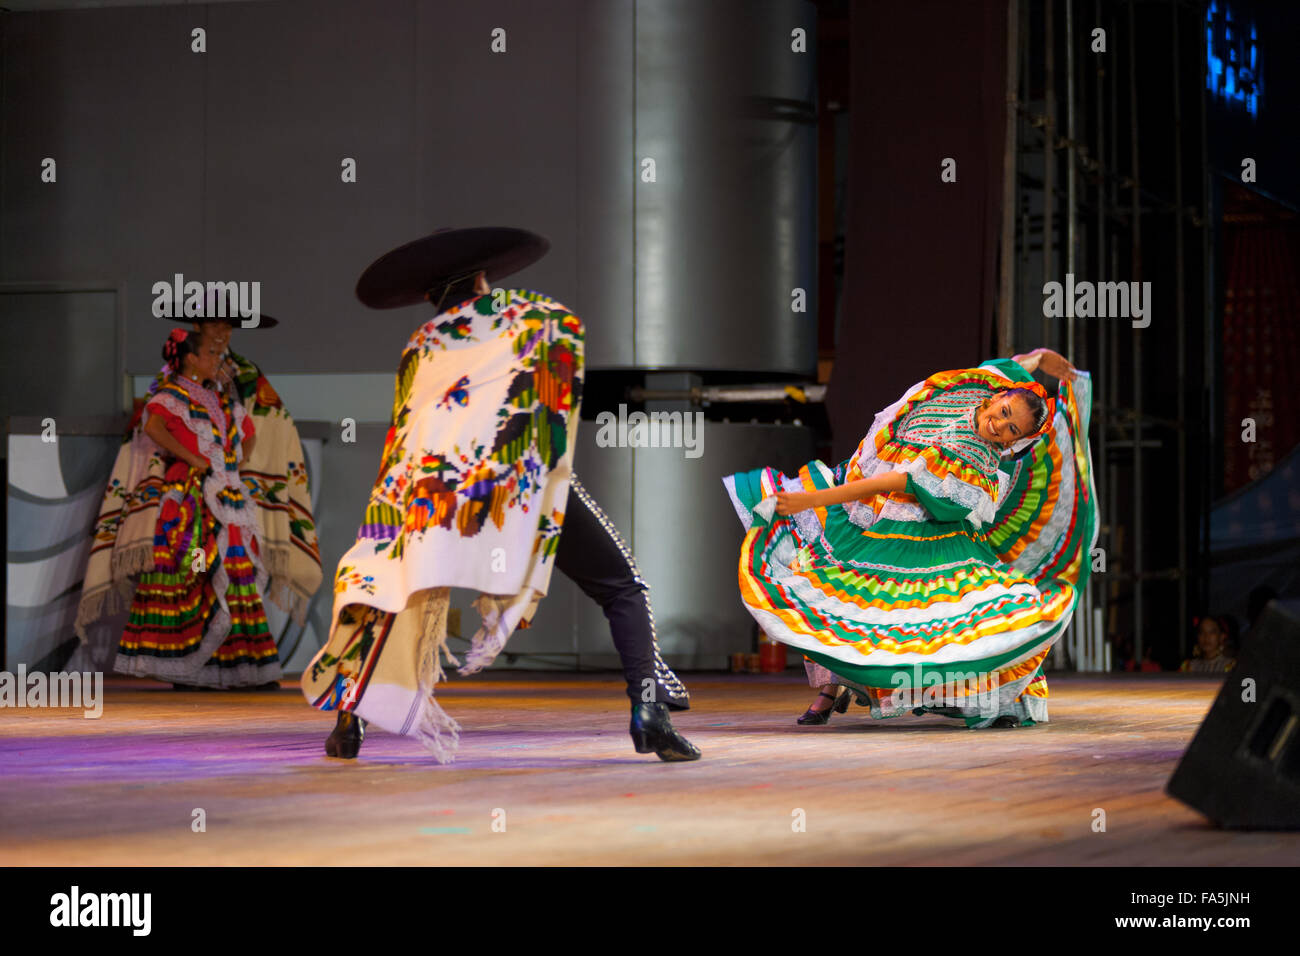 Ballerino femmina indossando variopinti abito verde, piegando lateralmente il corpo danza con partner di sesso maschile in capo durante un ballo messicano Foto Stock